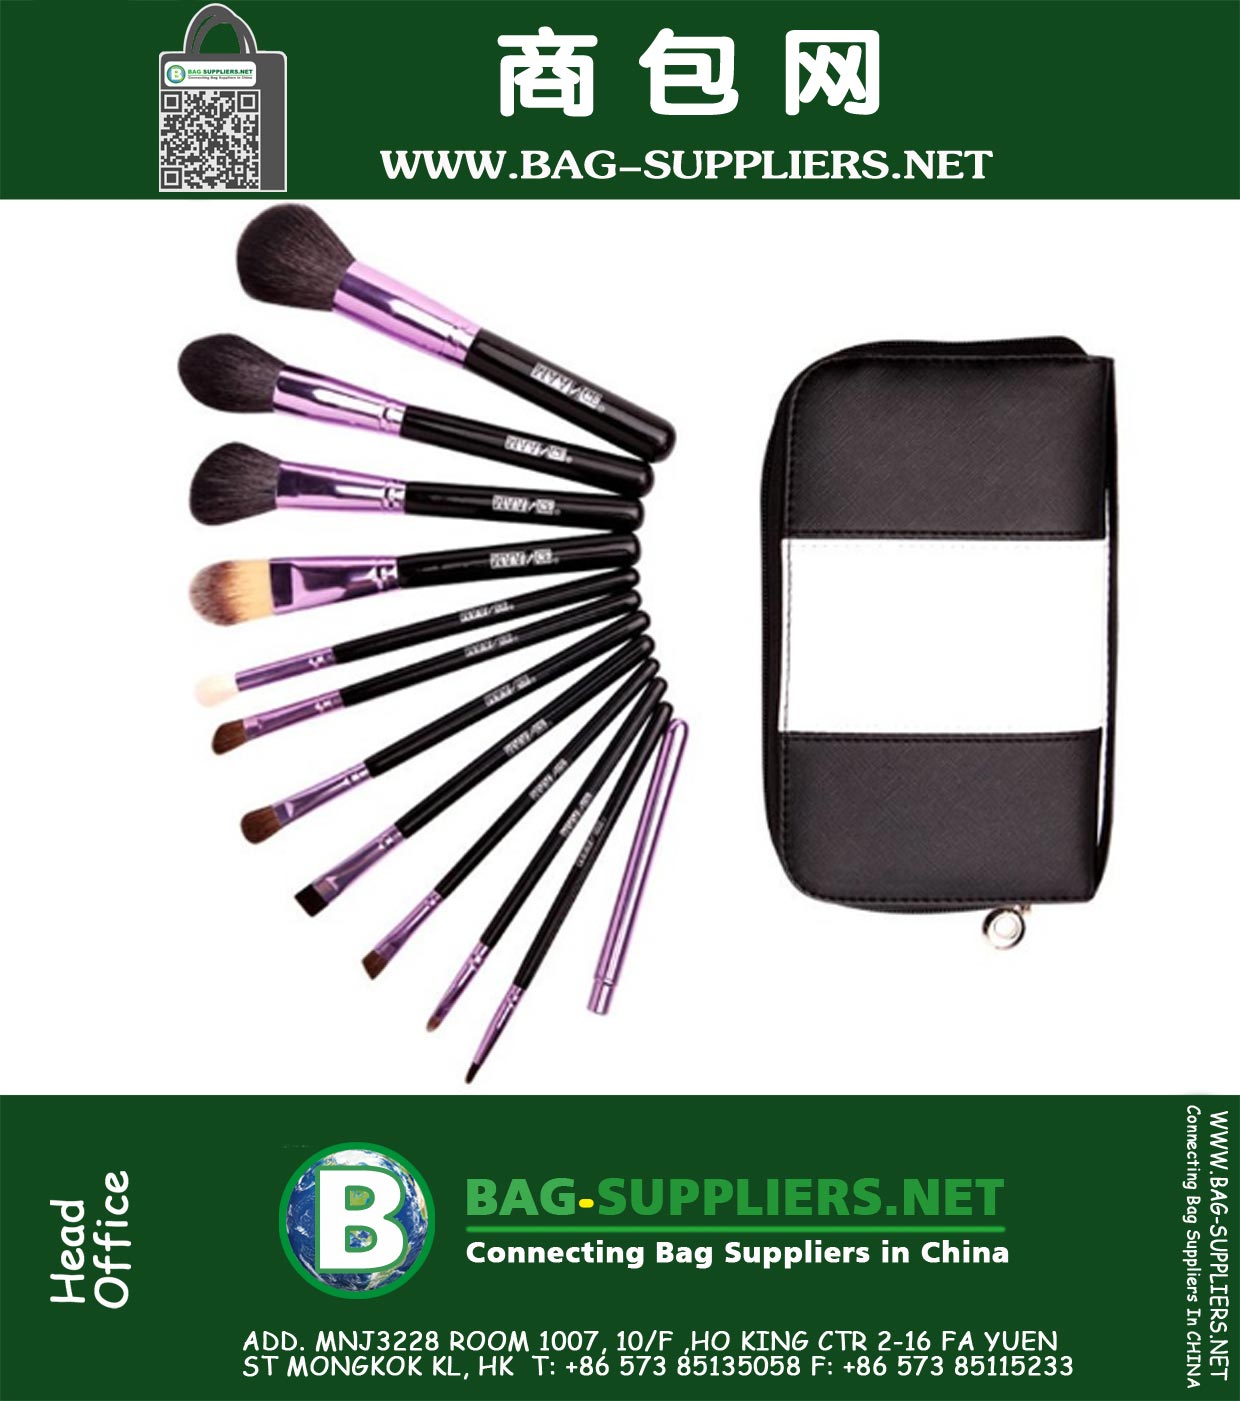 12pcs animal cabelo Pó Foundation Delineador Lip Makeup Brushes ferramenta Com Zipper Bag Escova Tool Set